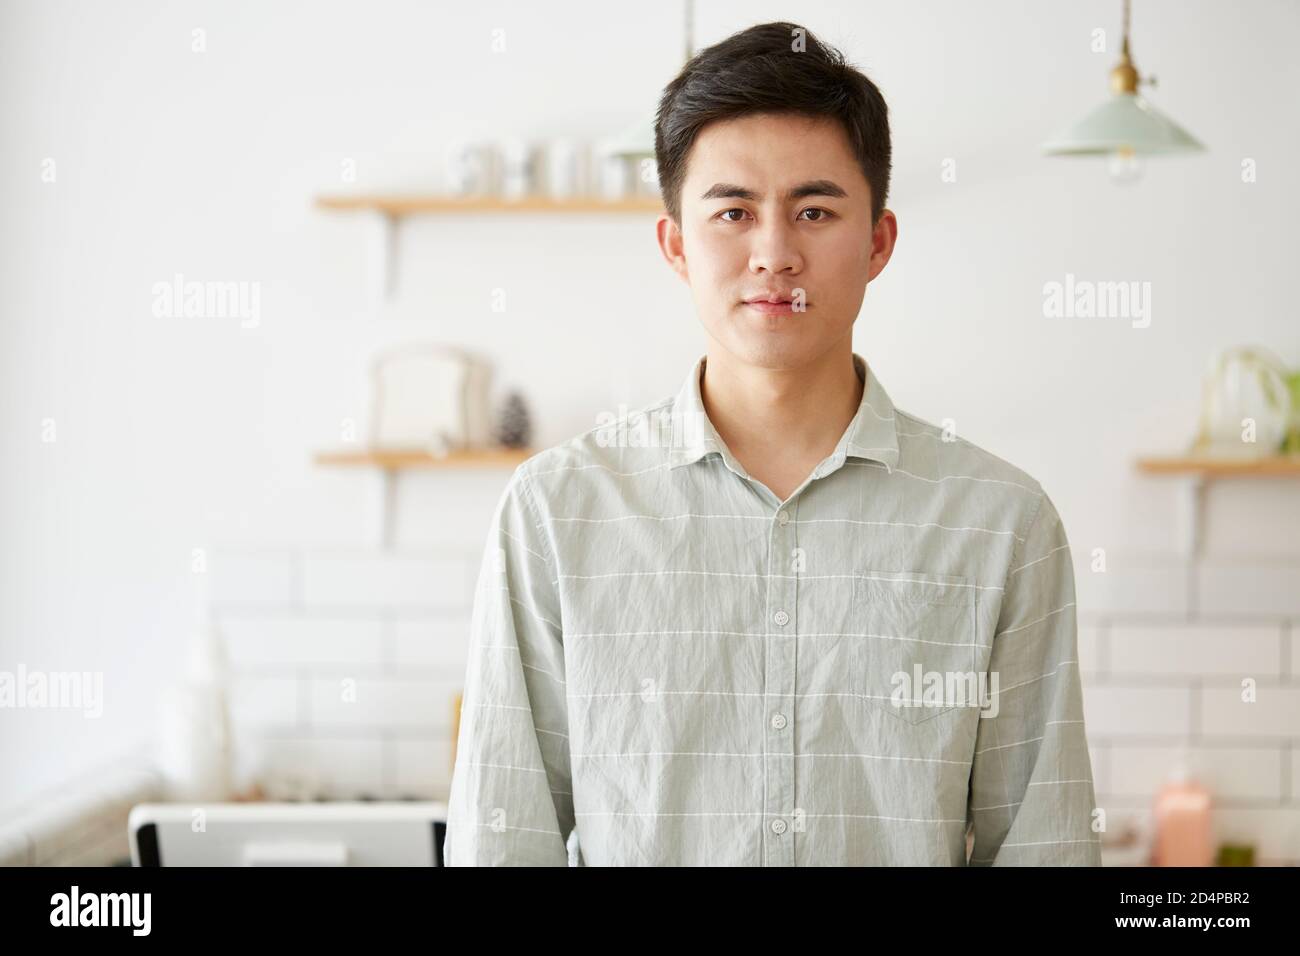 Porträt eines jungen asiatischen Mannes, der die Kamera anschaut Stockfoto